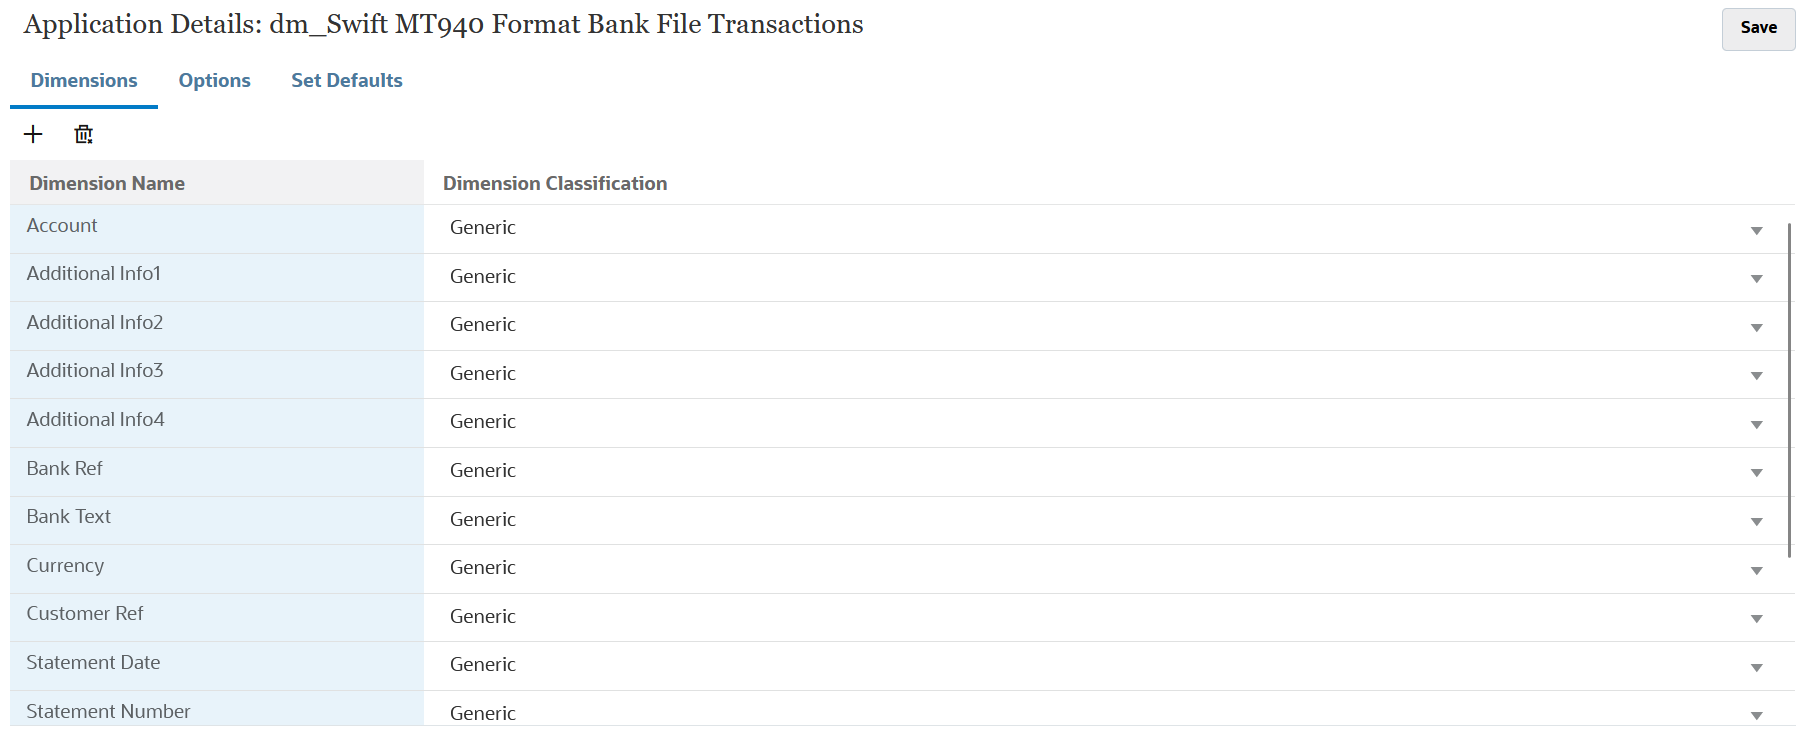 图中显示了 SWIFT MT940 银行文件事务的维详细信息。